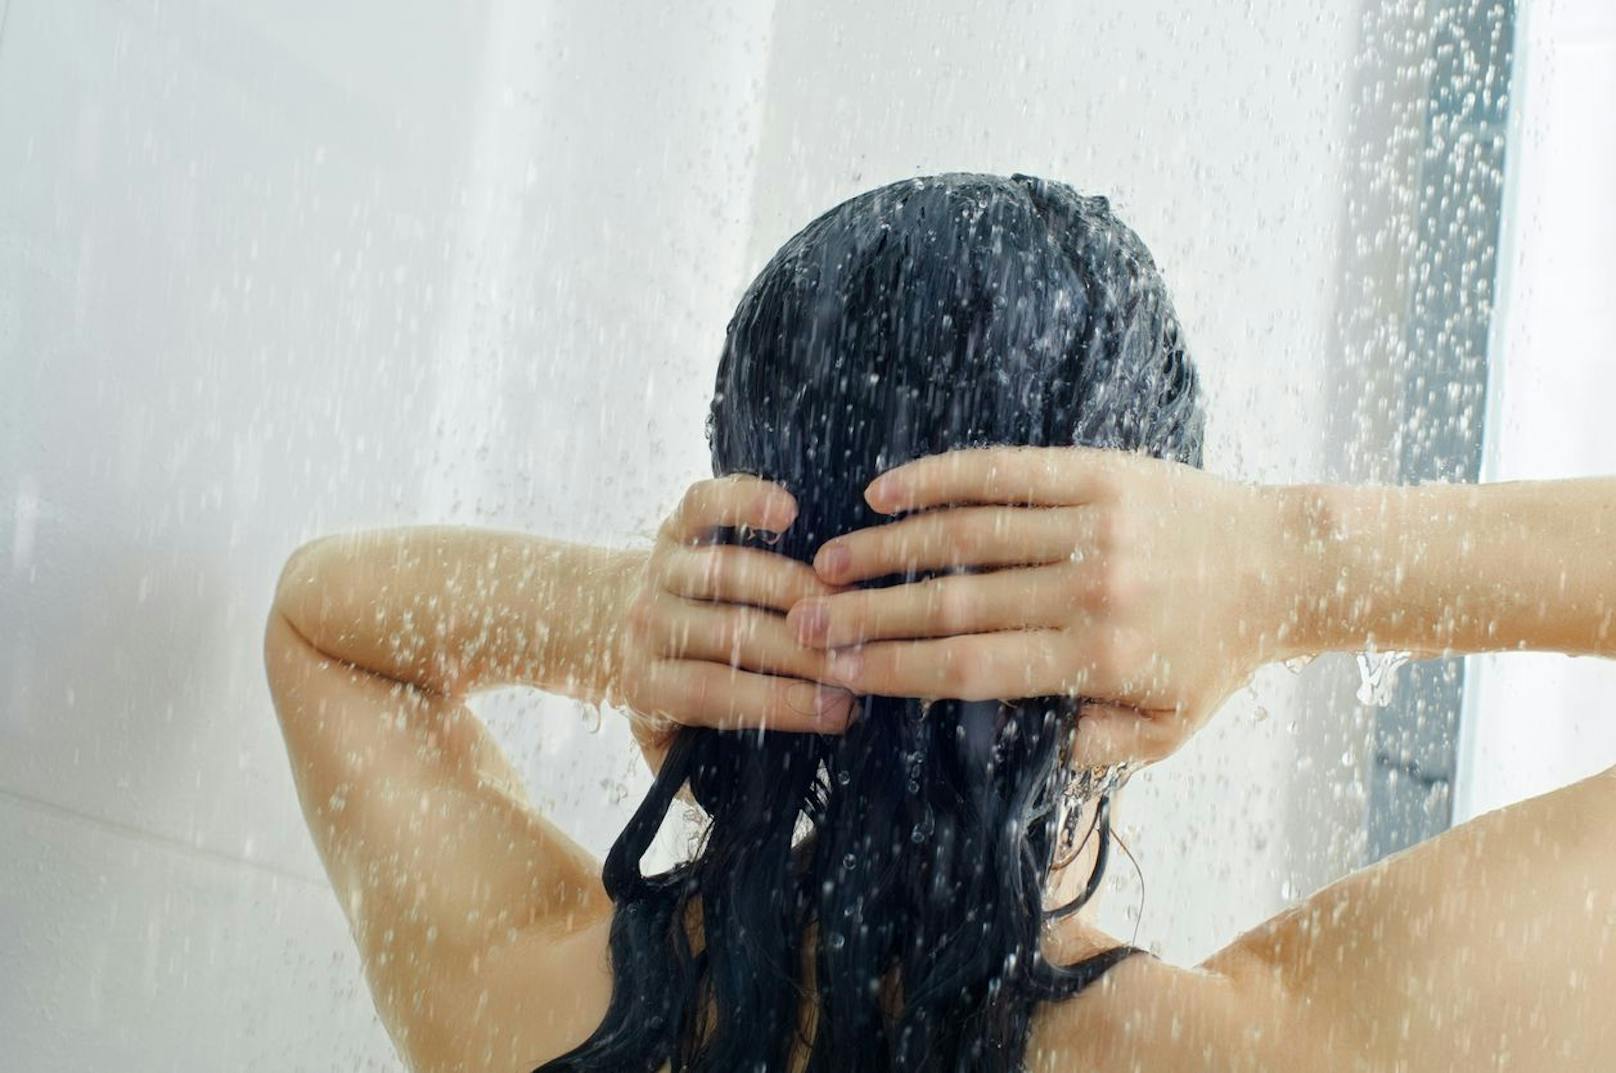 Wasser: 22 Prozent werden beim Duschen oder Baden verwendet.